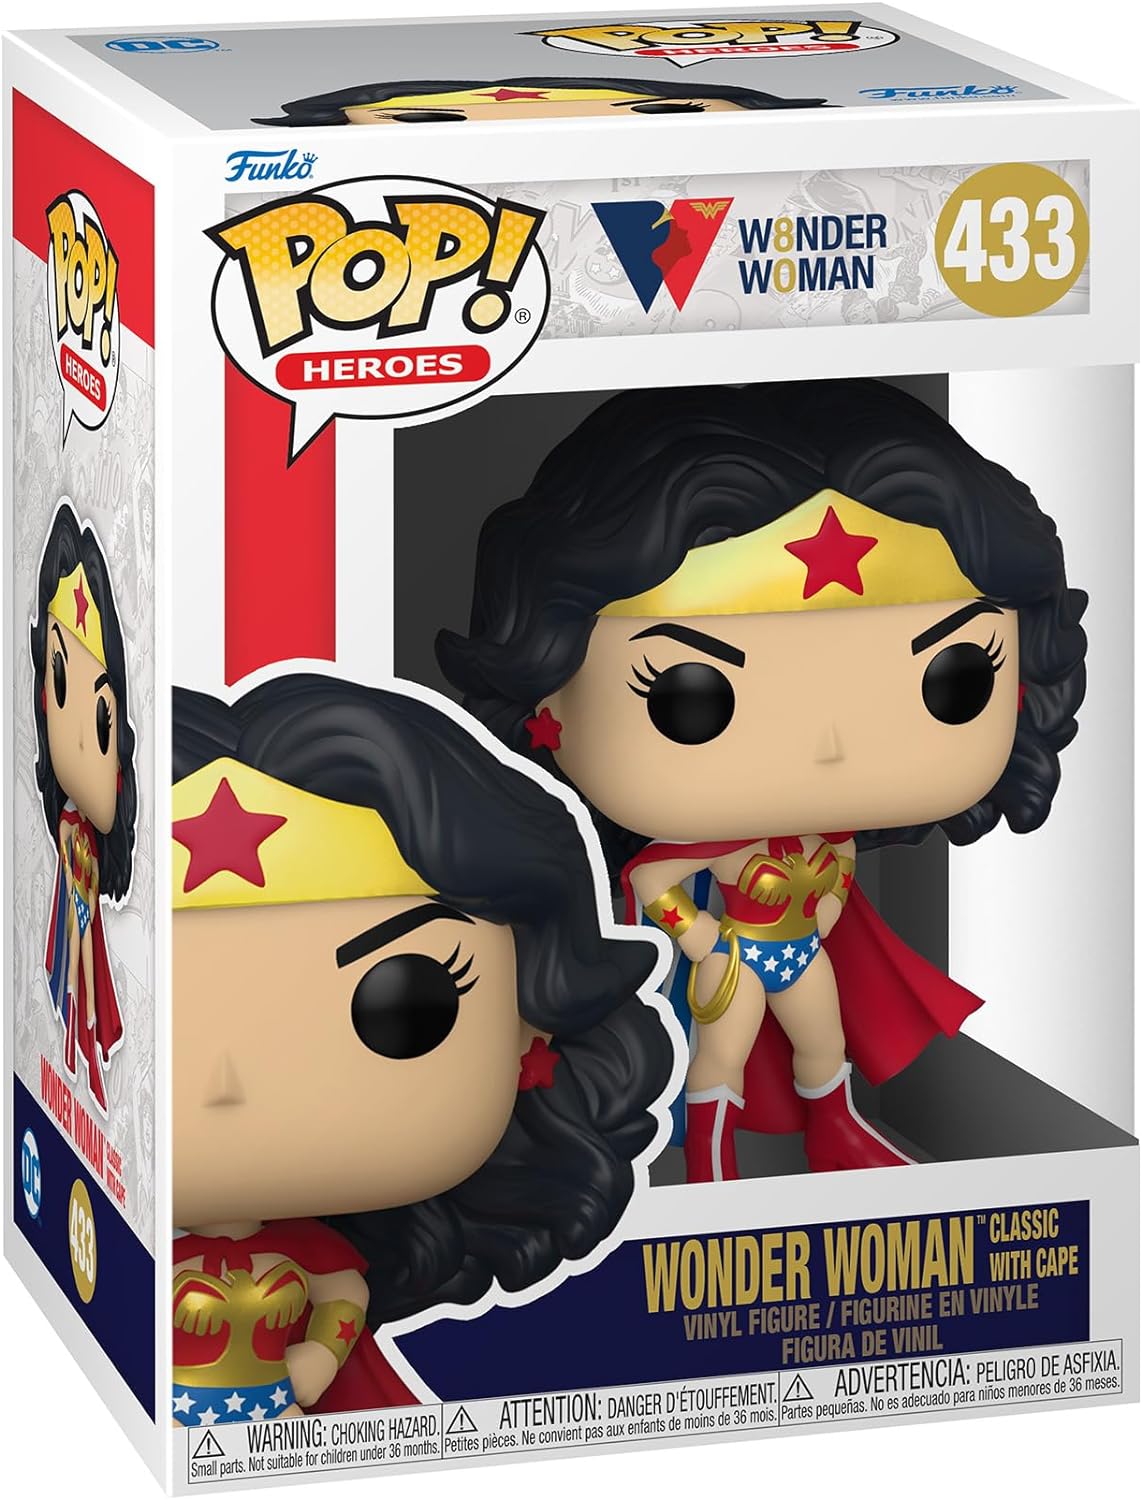 Pop! Heroes Wonder Woman